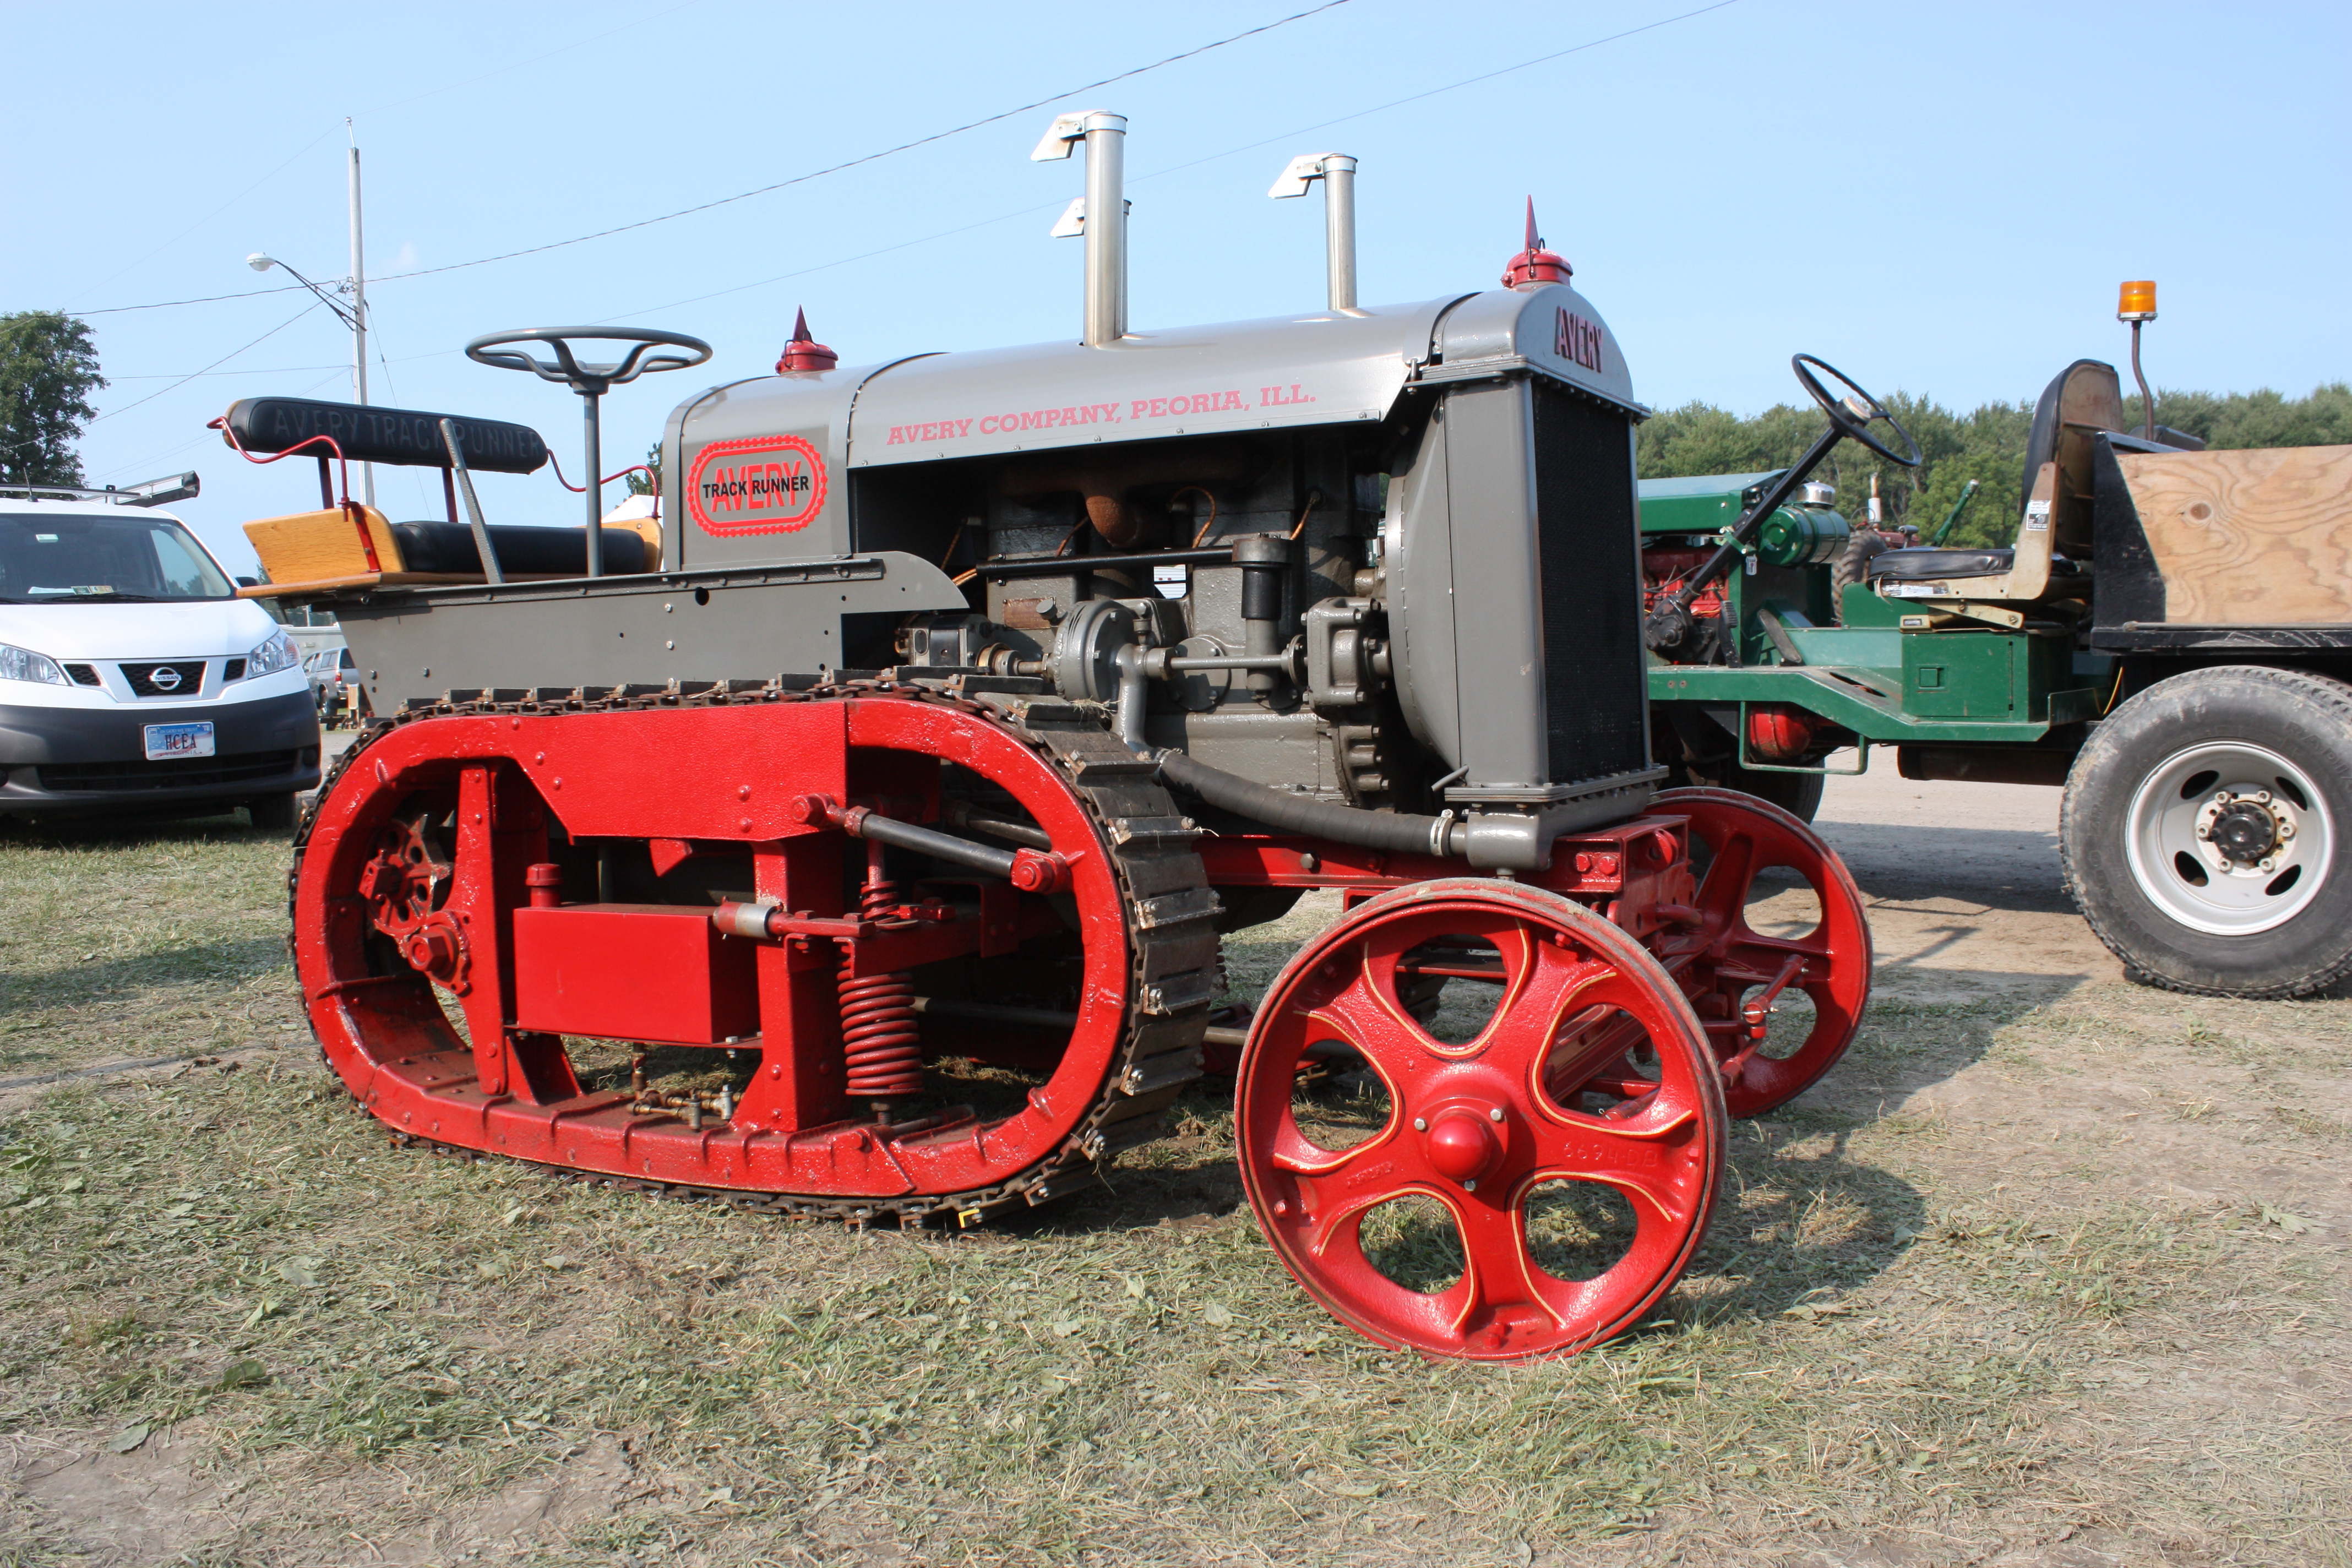 avery-track-runner-tractor-1923-canandaigua-ny-show-2014-115.jpg